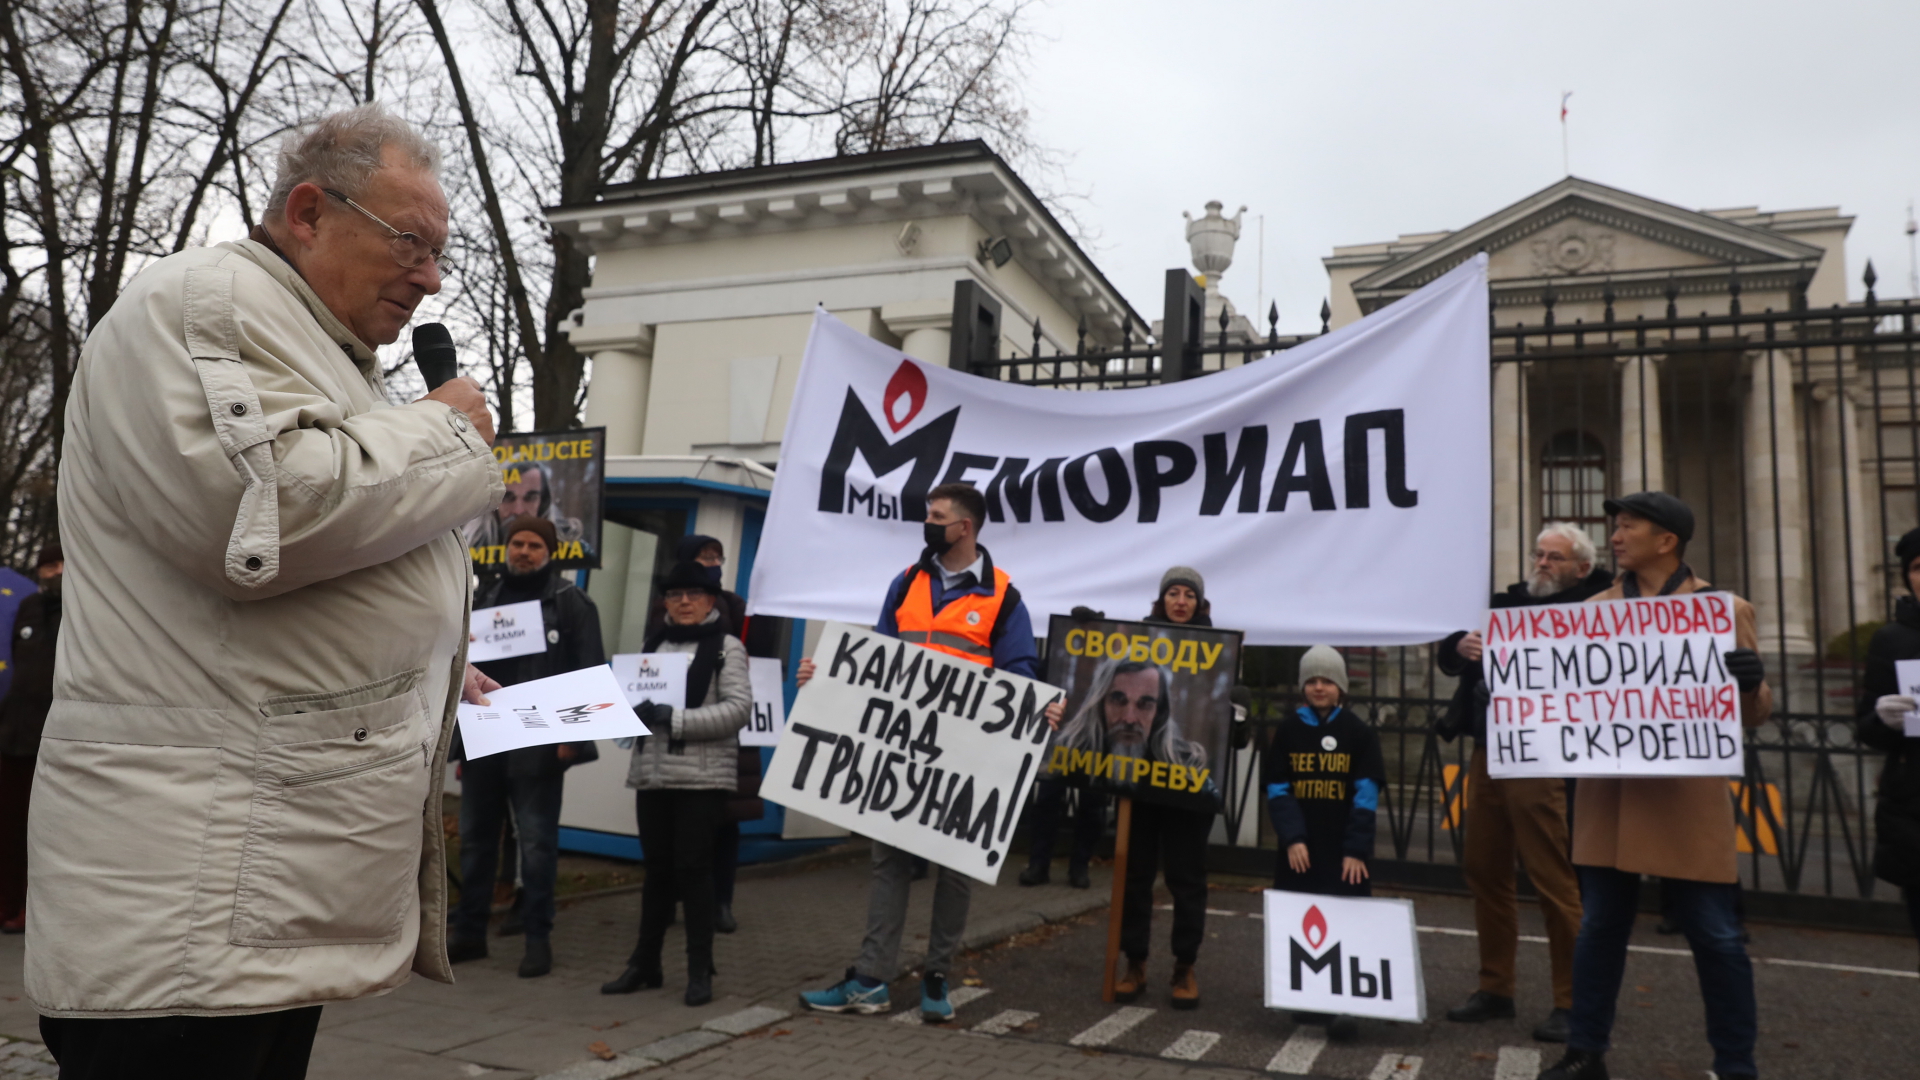  Adam Michnik, Chefredakteur der polnischen Zeitung "Gazeta Wyborcza", nimmt an einer Demonstration zur Verteidigung der Menschenrechtsorganisation Memorial vor der russischen Botschaft in Warschau teil. 